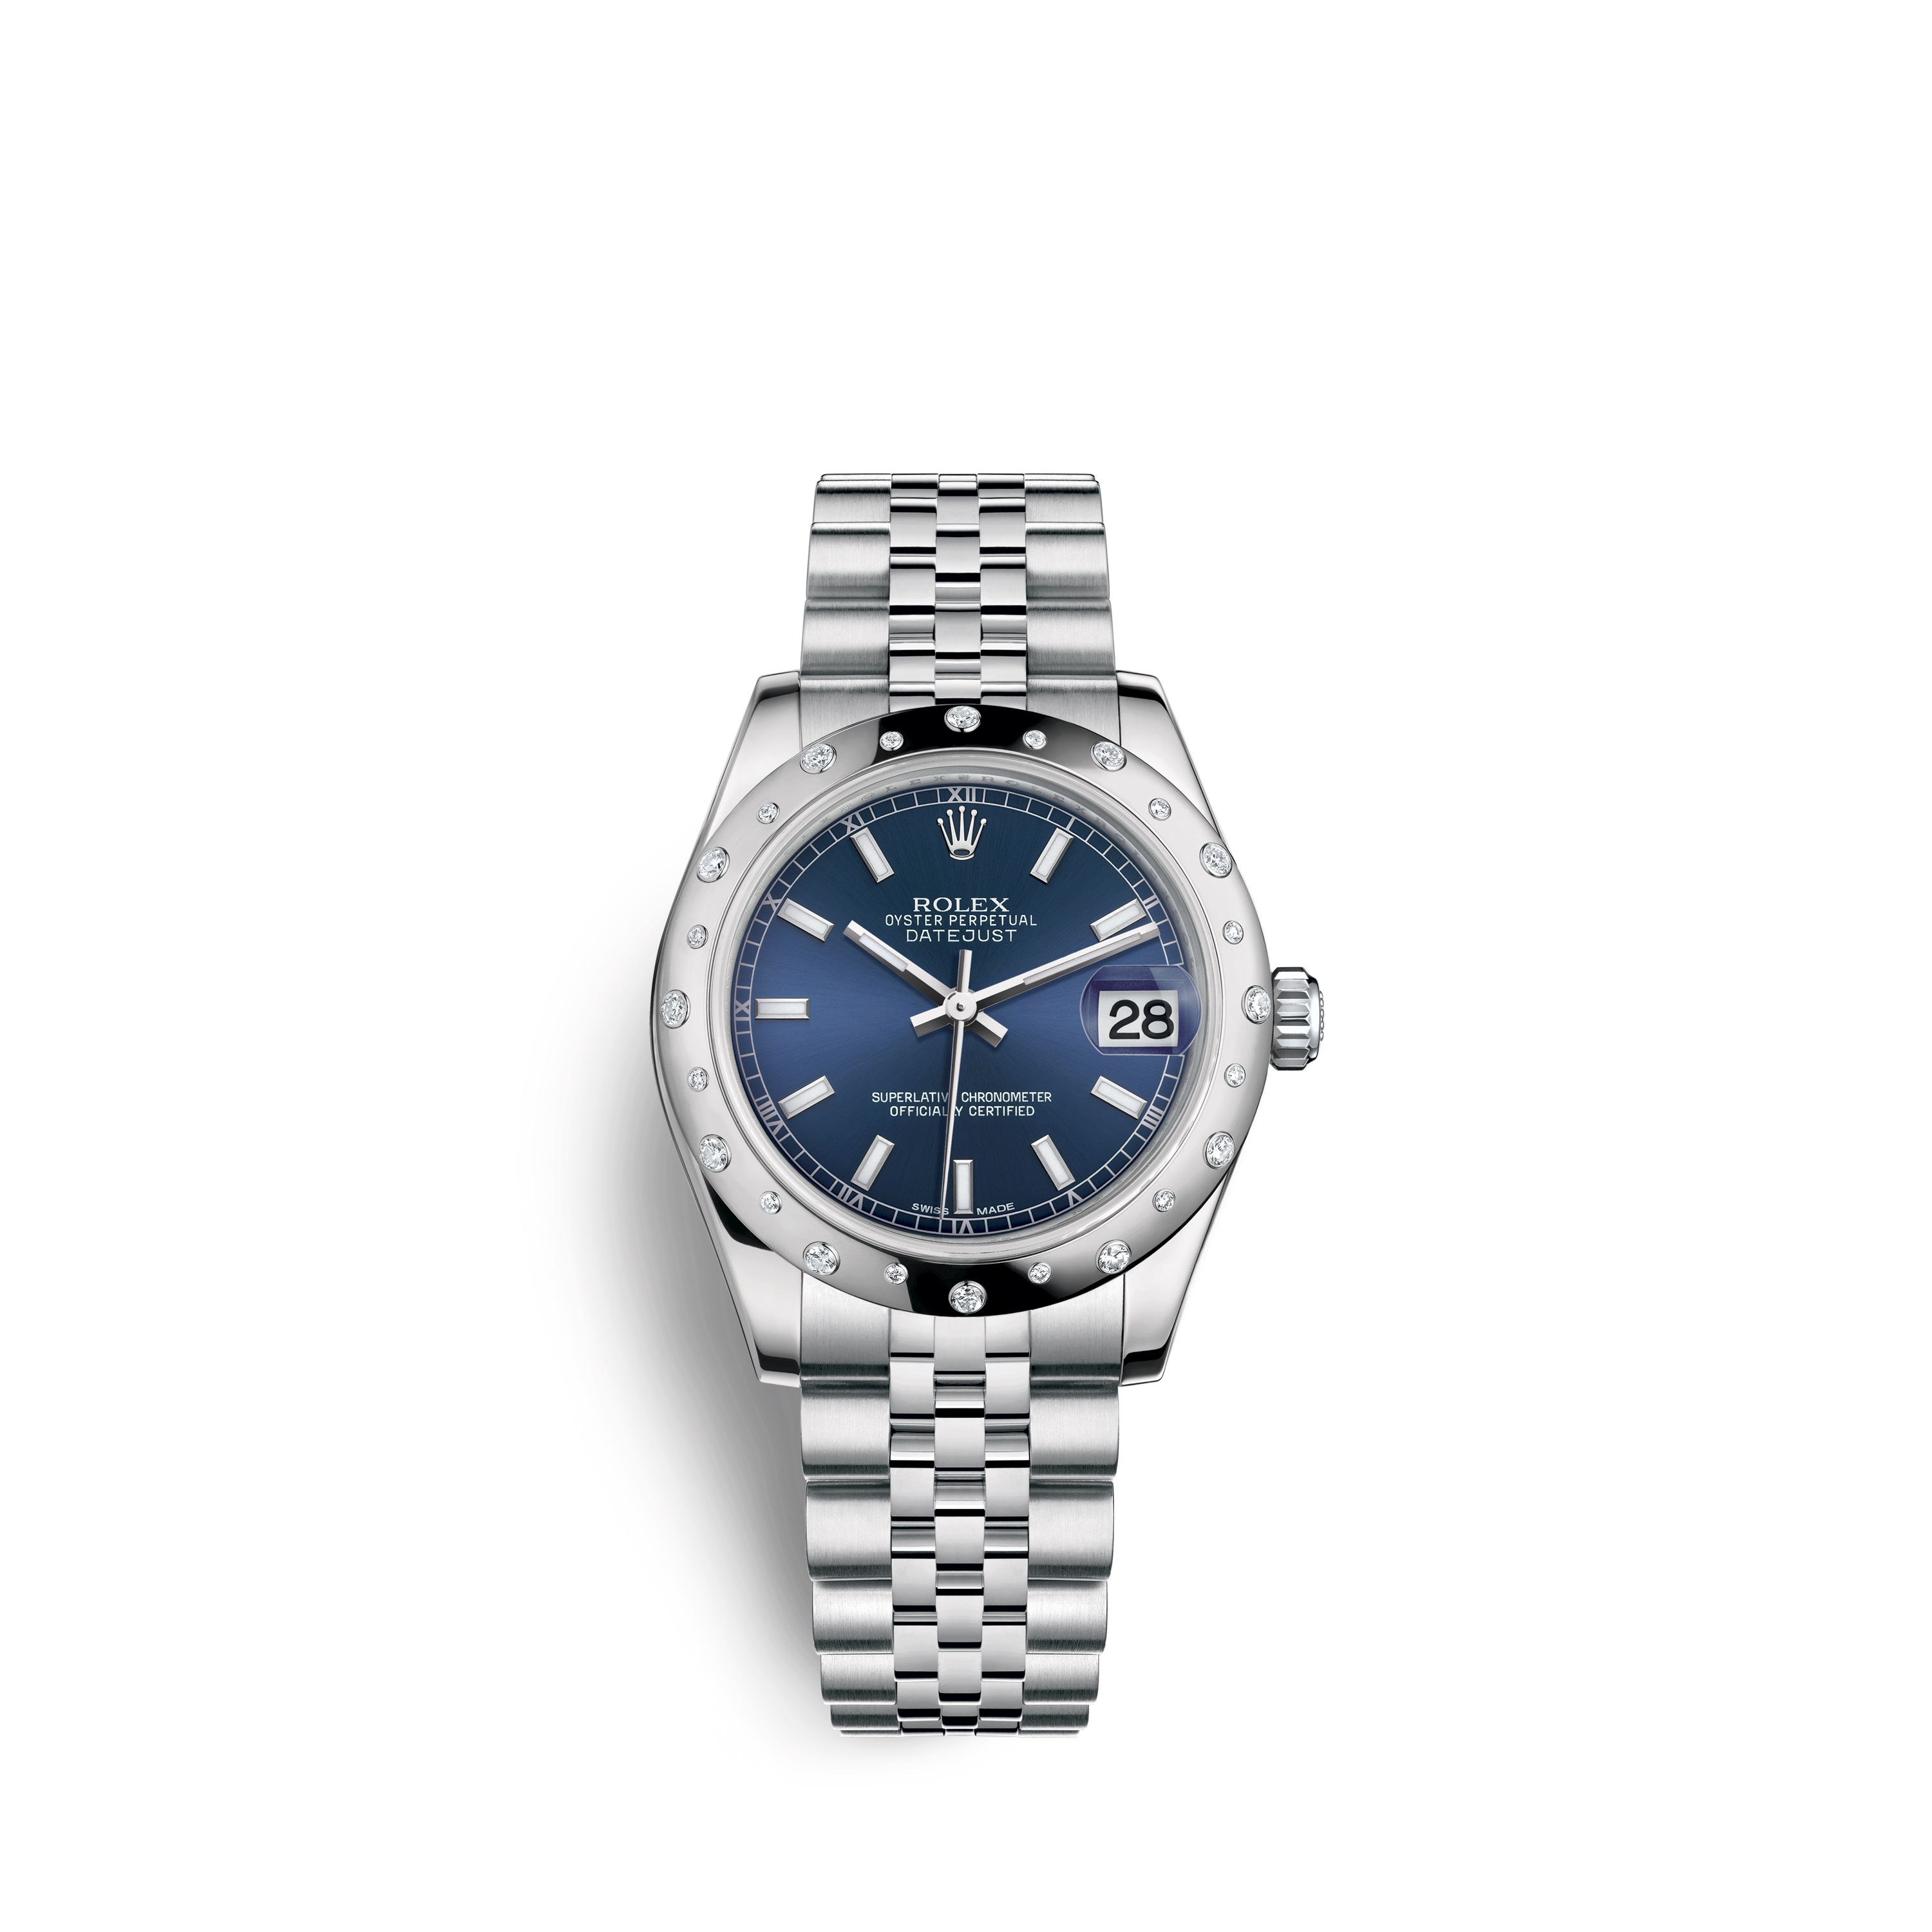 Datejust 31 178344 White Gold & Diamonds Watch (Blue)